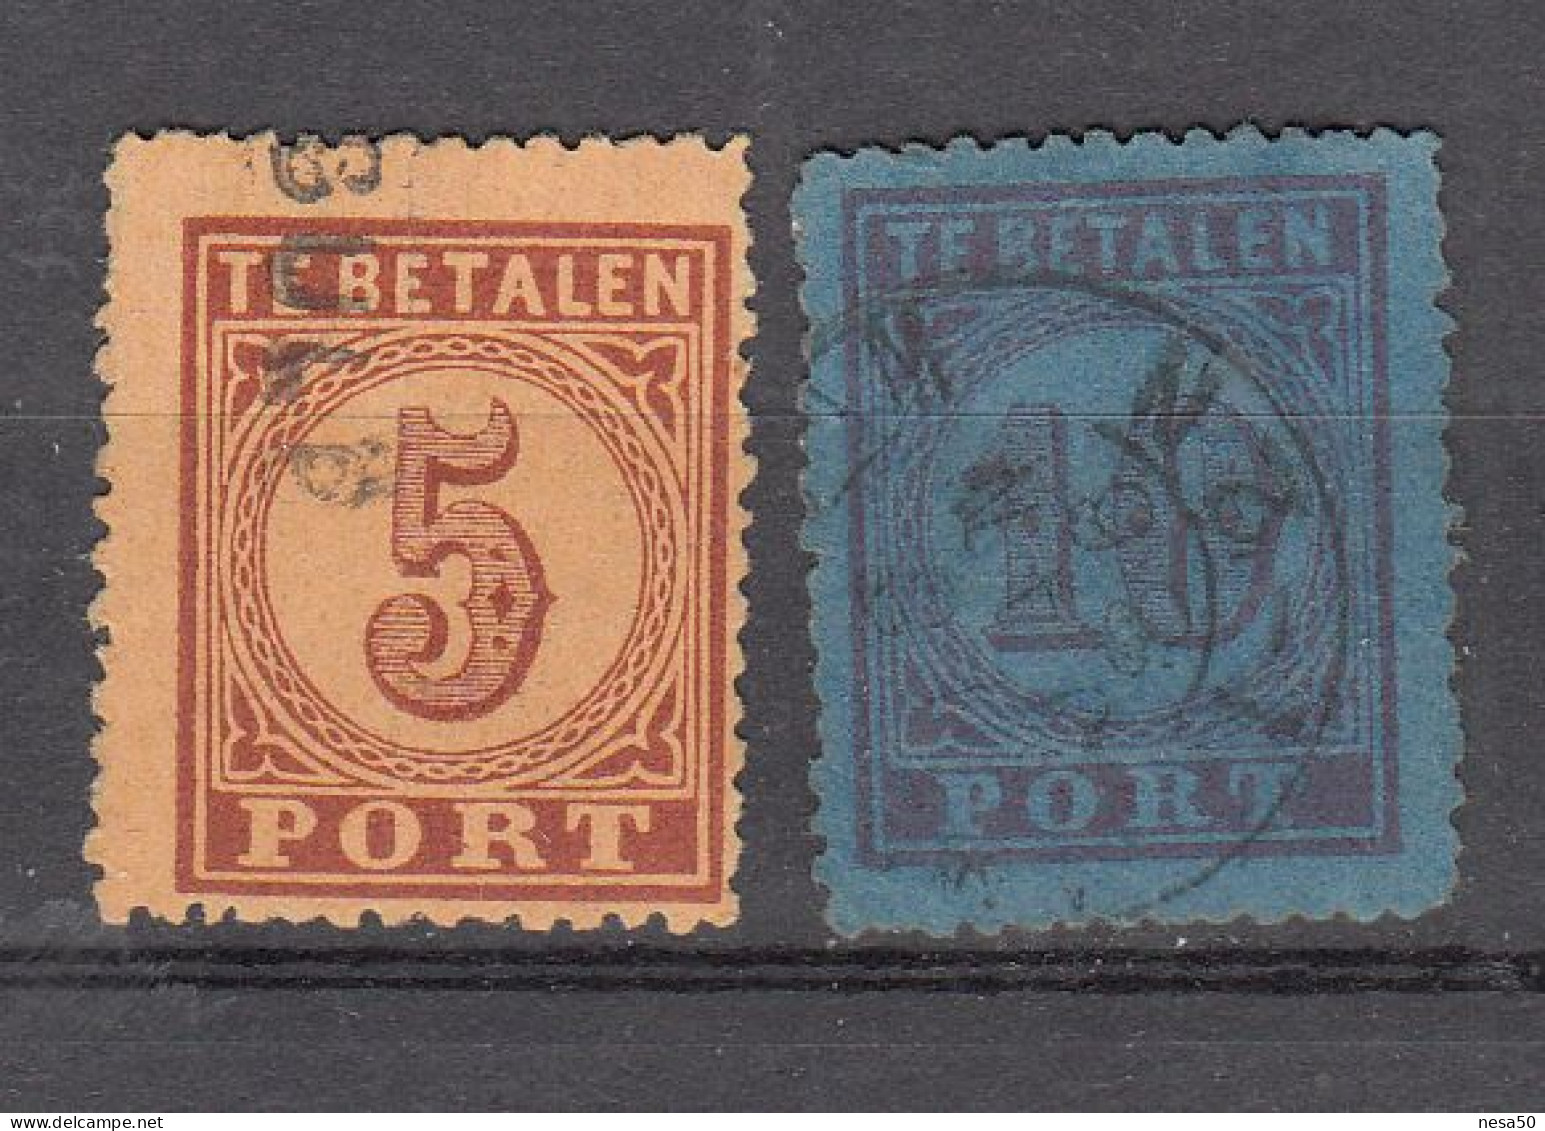 Nederland Luchtpost 1870 Nvph Nr  1 - 2, Michel Nr 1 - 2,gestempeld Compleet - Luftpost